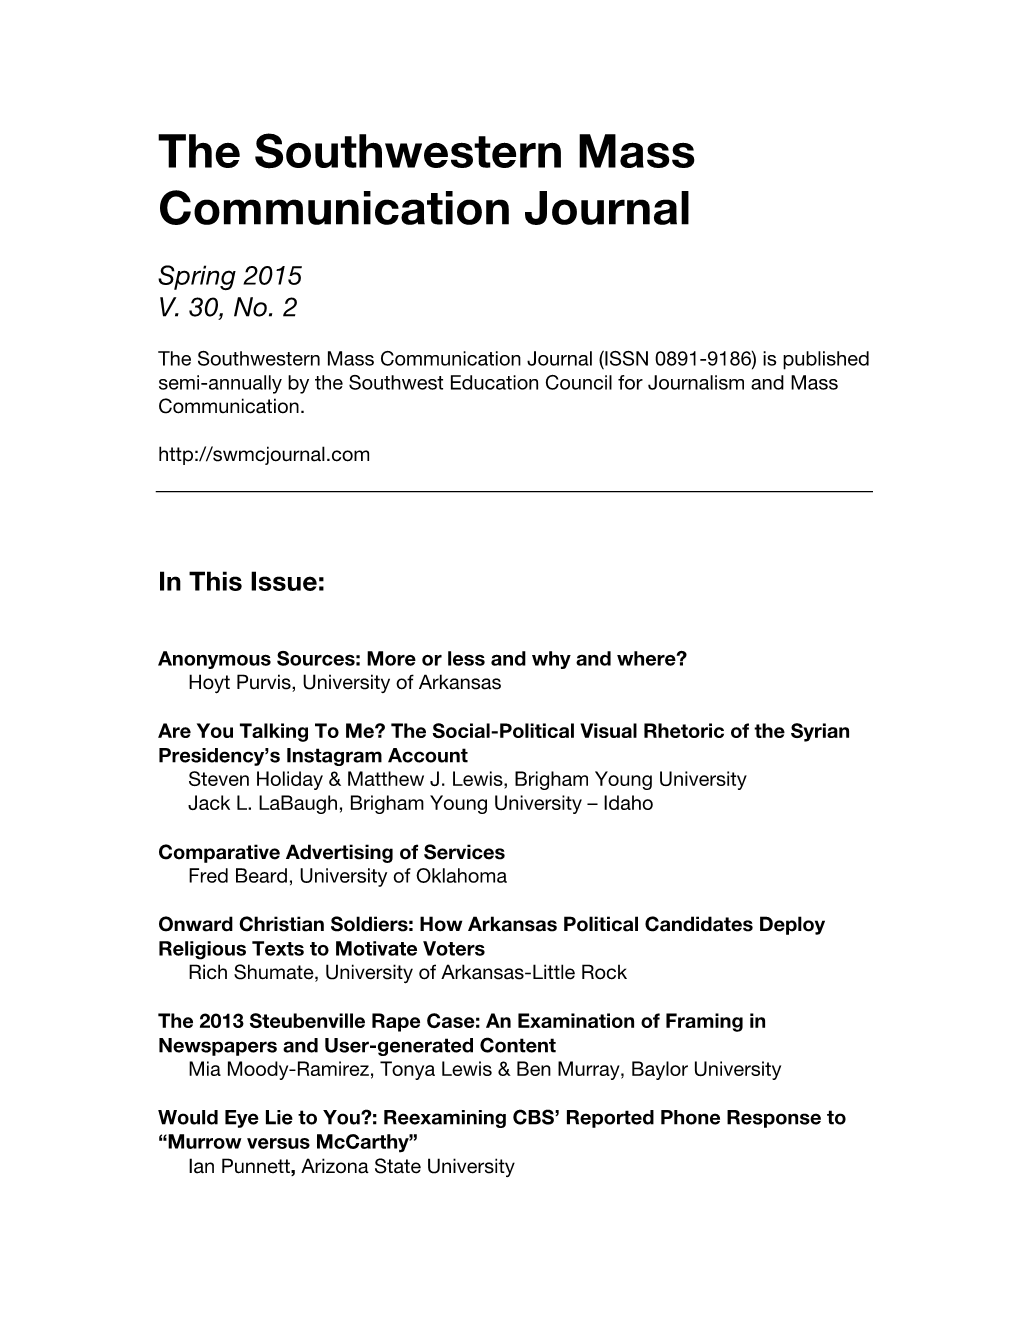 The Southwestern Mass Communication Journal